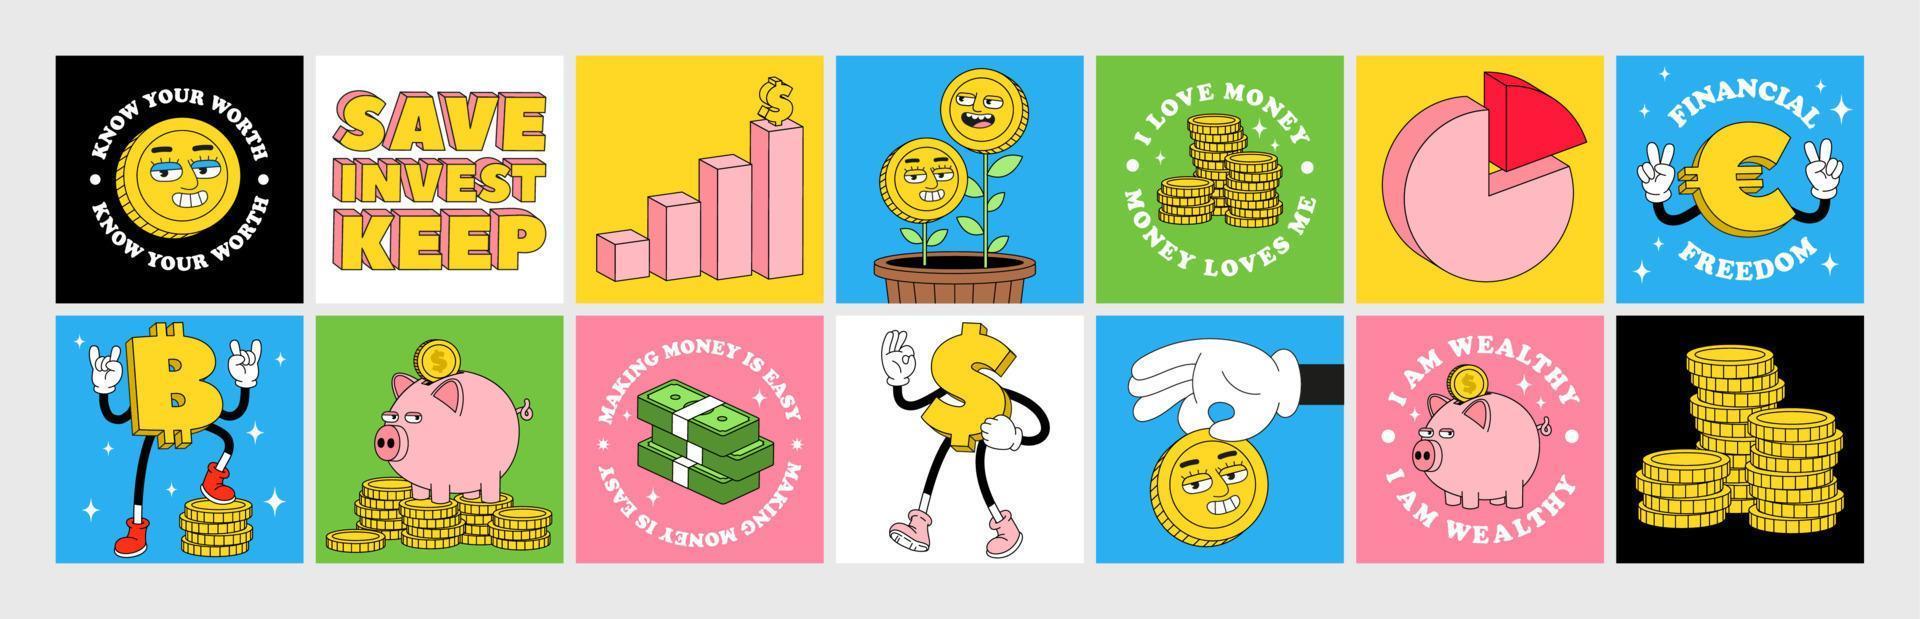 Finanzaufkleberpaket mit lustigen Zeichentrickfiguren, inspirierenden Zitaten über Geld. vektor